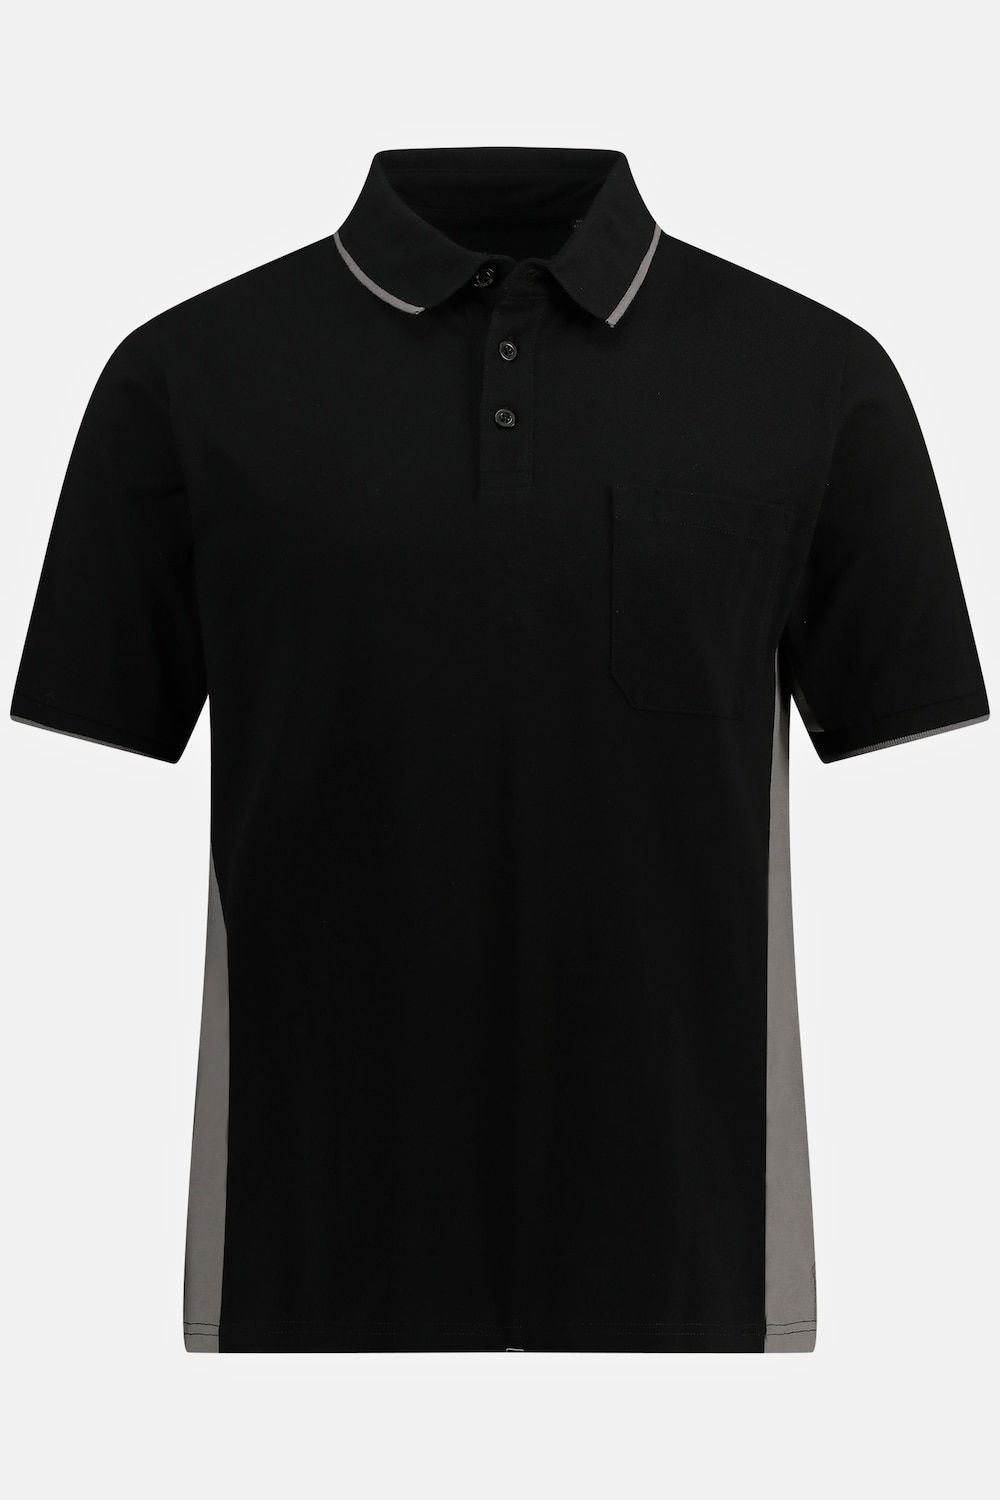 Grote Maten Poloshirt, Heren, zwart, Maat: L, Katoen, JP1880